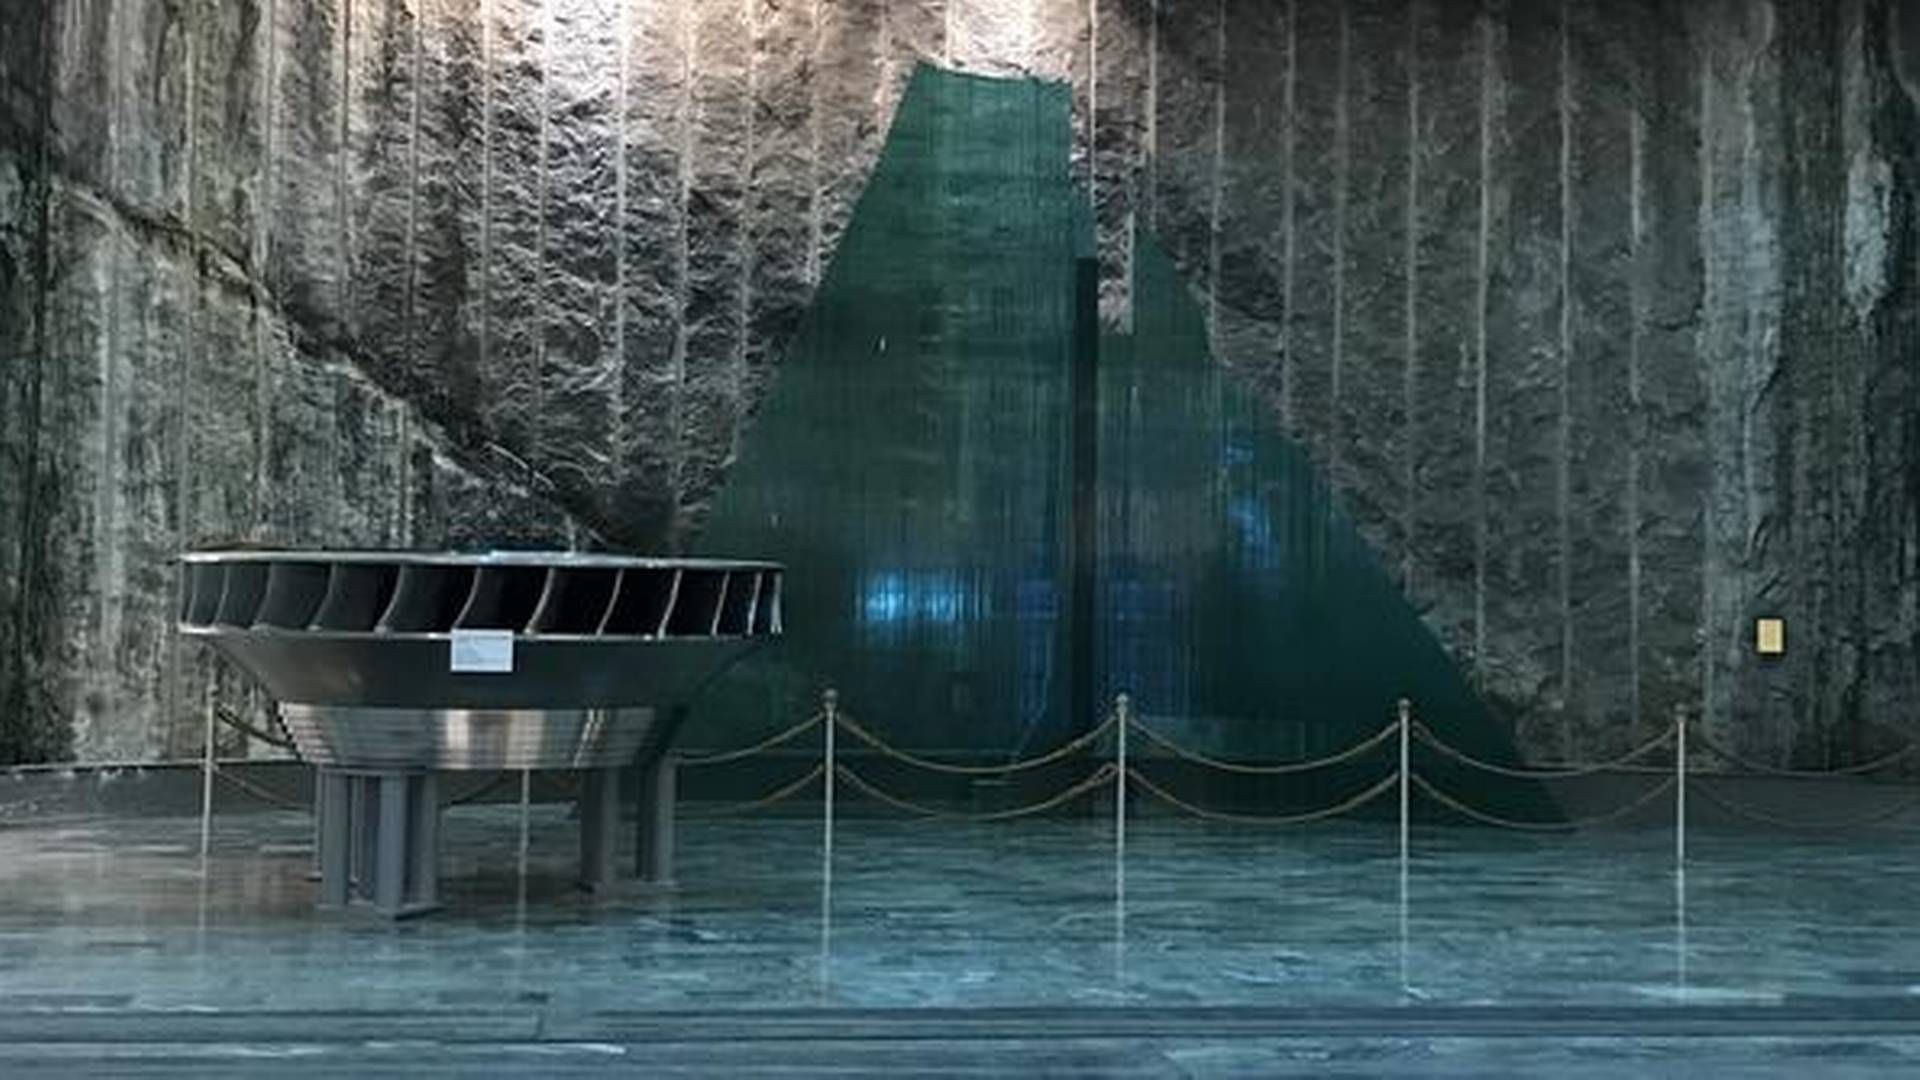 TONSTAD VANNKRAFTVERK: Tonstad vannkraft verk er en av Norges største vannkraftverk, målt i installert effekt. Målt i samlet årsproduksjon er det størst. Kraftverket eies av Sira-Kvina. | Foto: Sira-Kvina